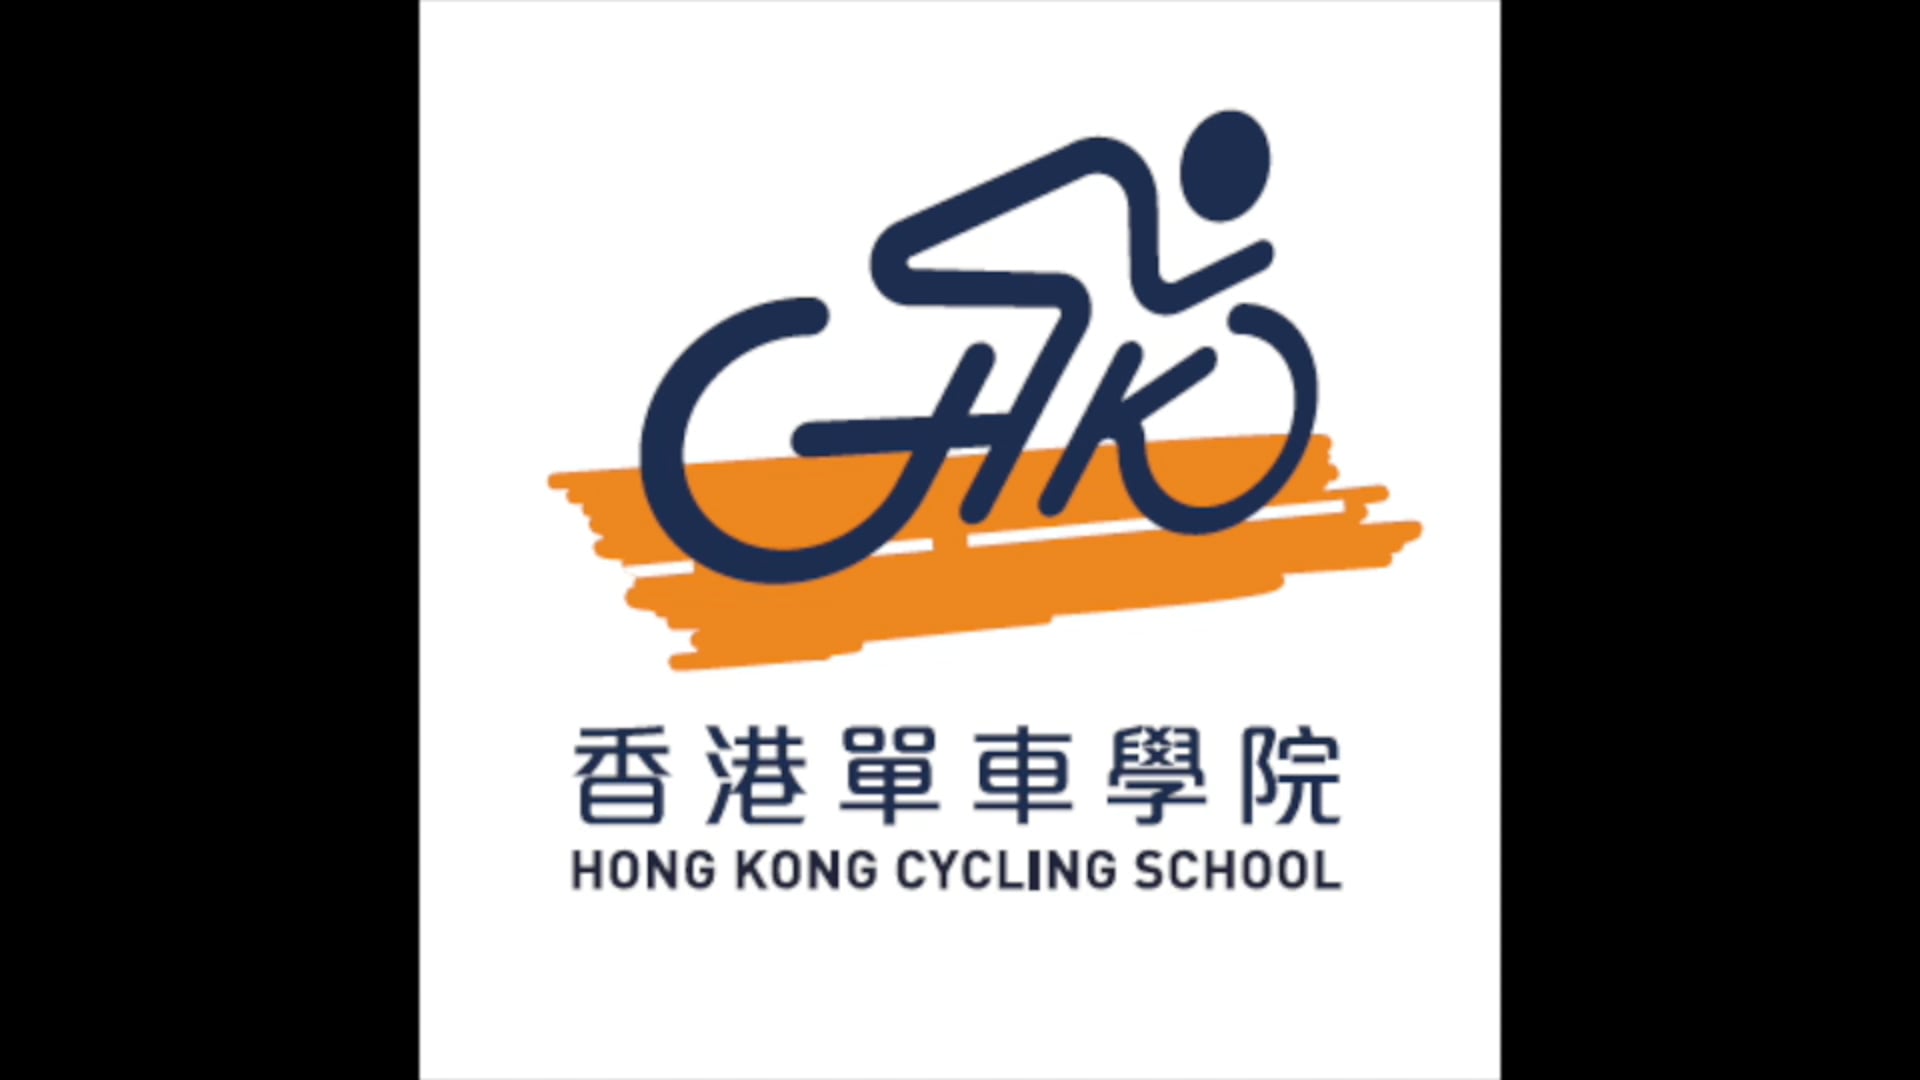 香港單車學院主題音樂